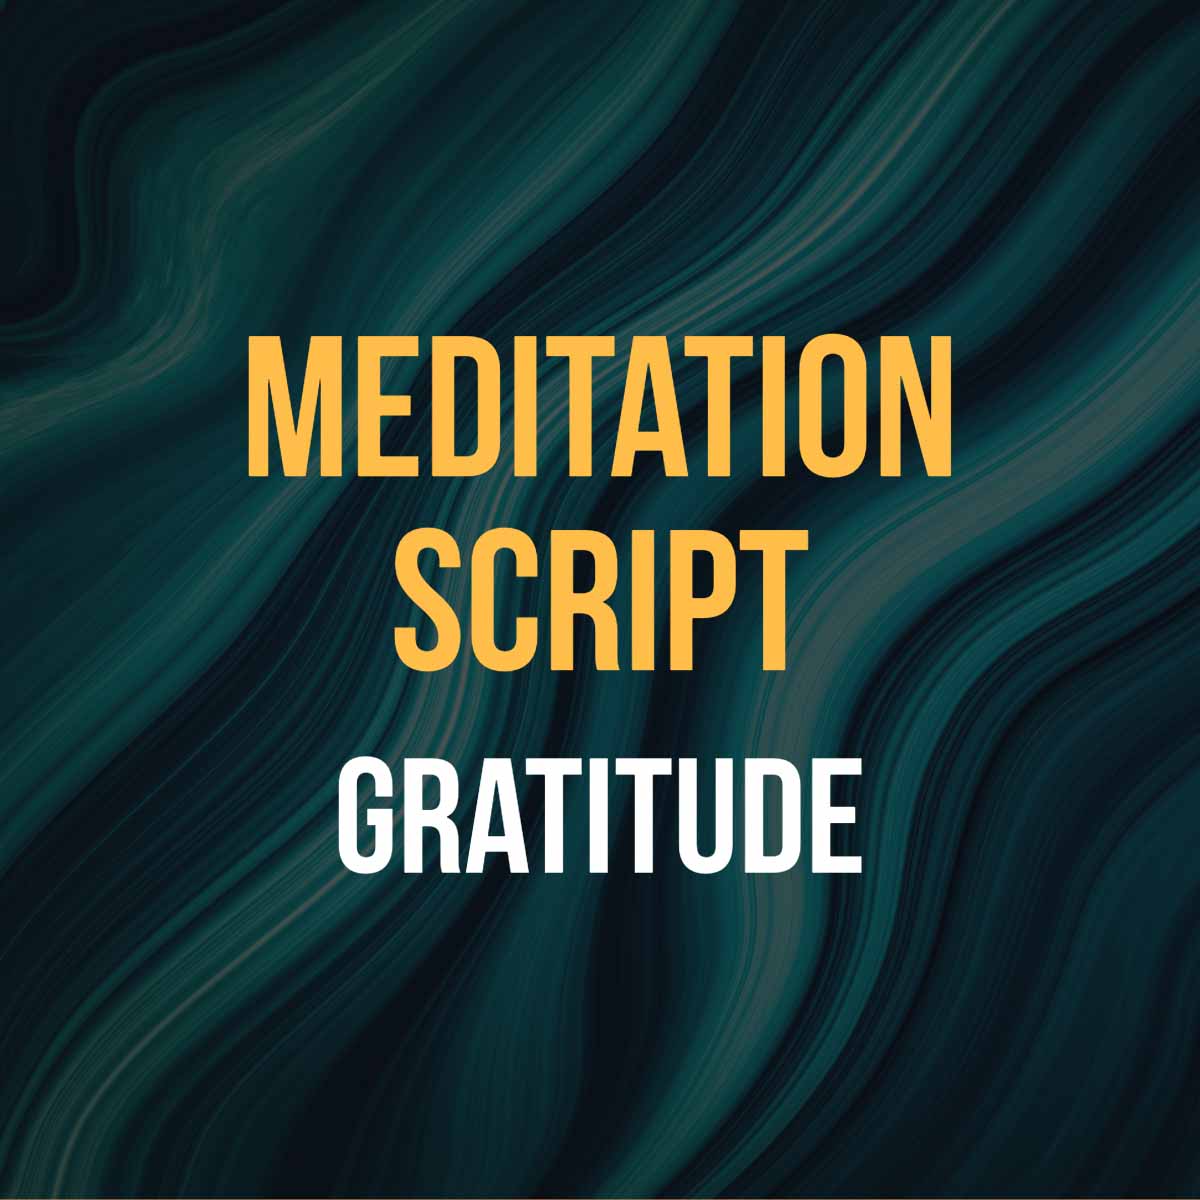 Meditation script for gratitude